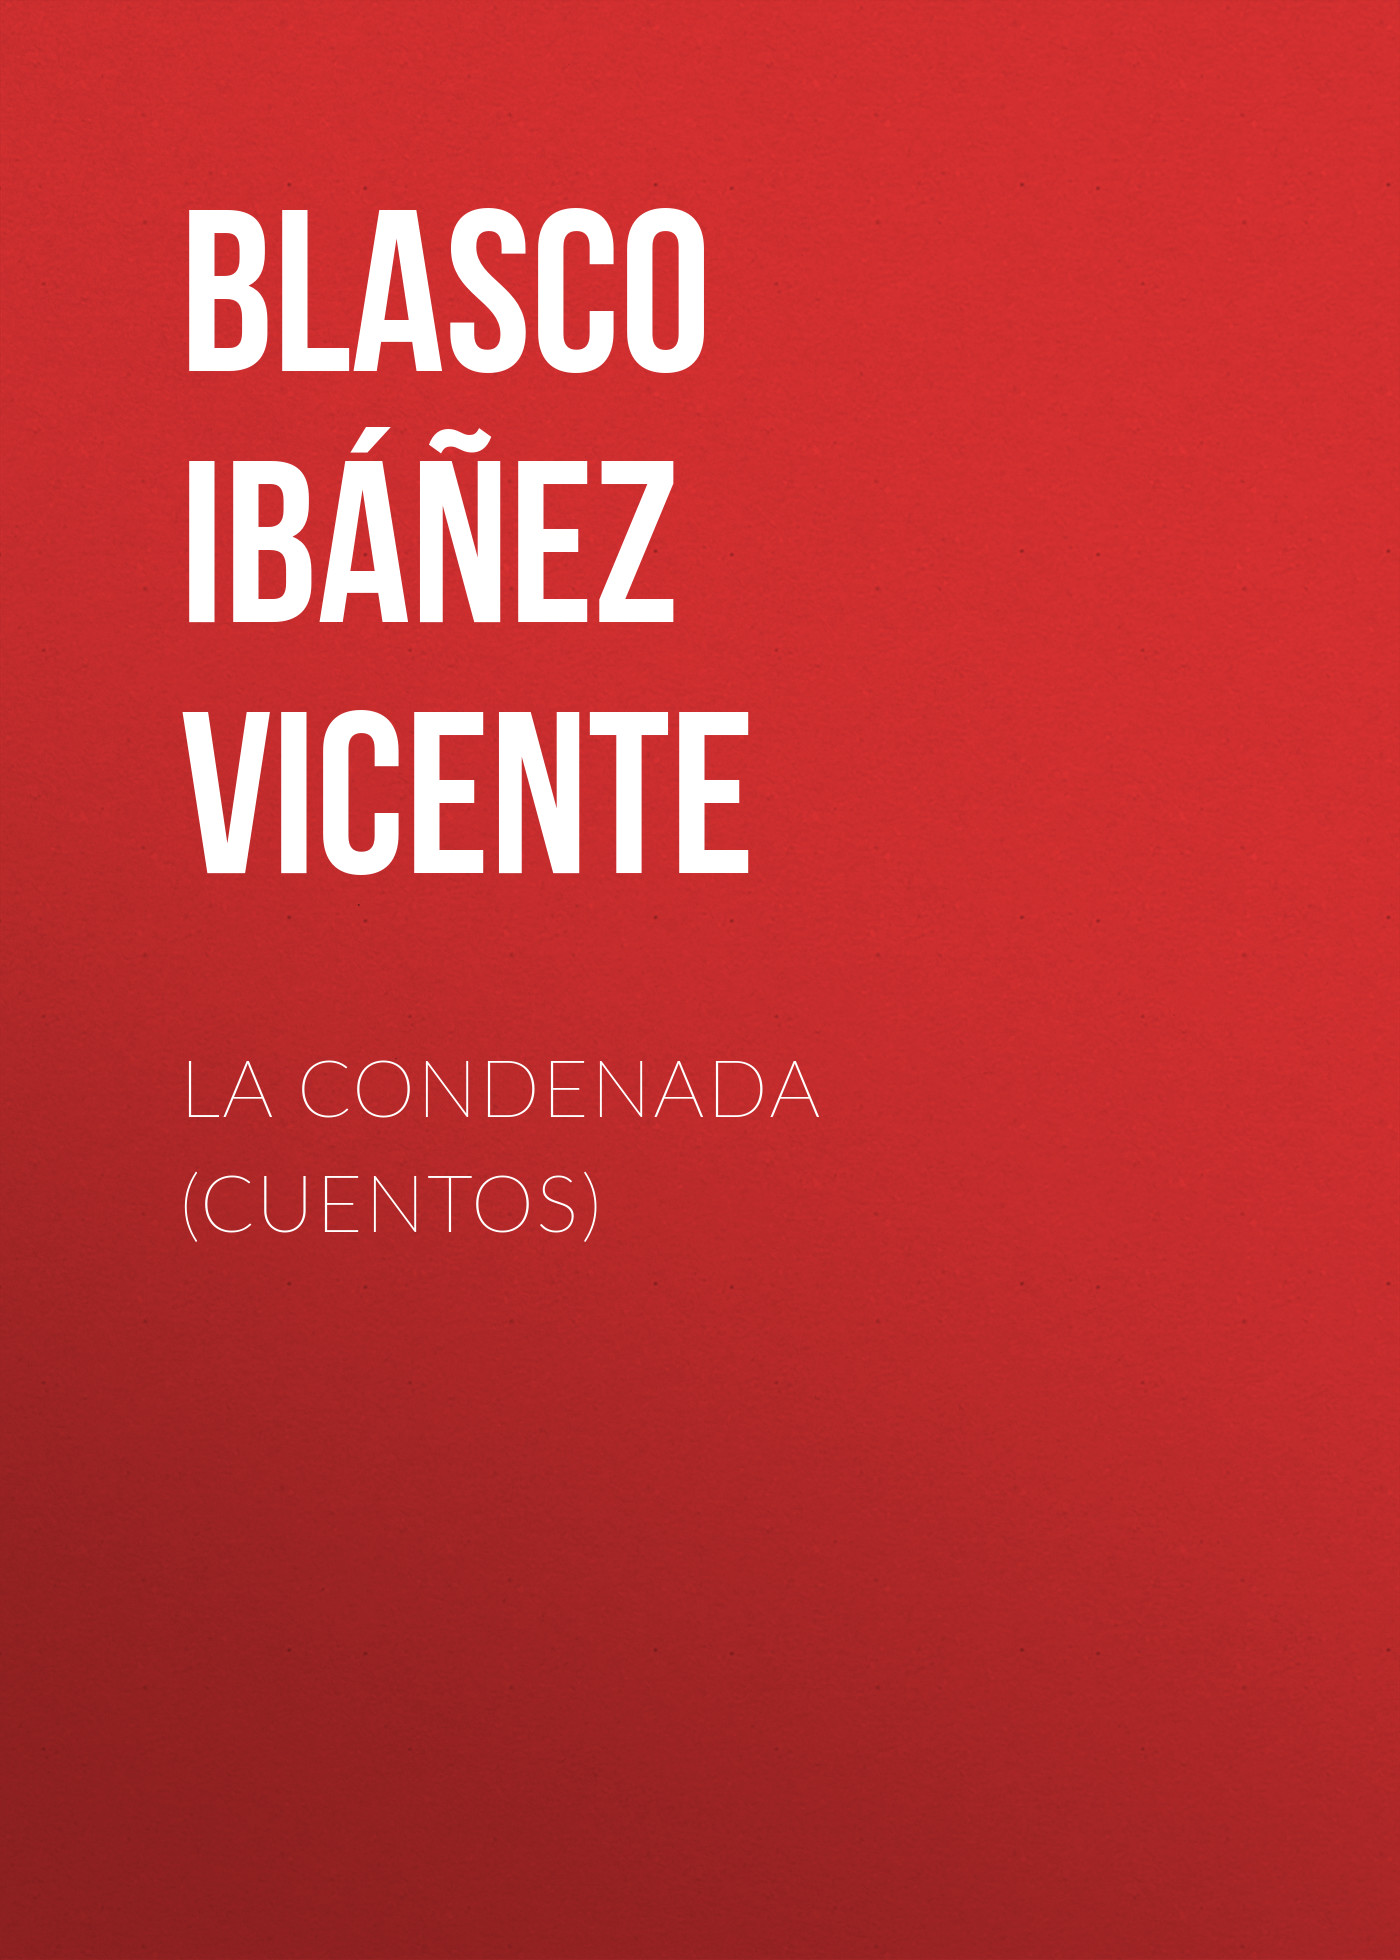 Книга La condenada (cuentos) из серии , созданная Vicente Blasco Ibáñez, может относится к жанру Иностранные языки, Зарубежная старинная литература, Зарубежная классика. Стоимость электронной книги La condenada (cuentos) с идентификатором 24178772 составляет 0.90 руб.